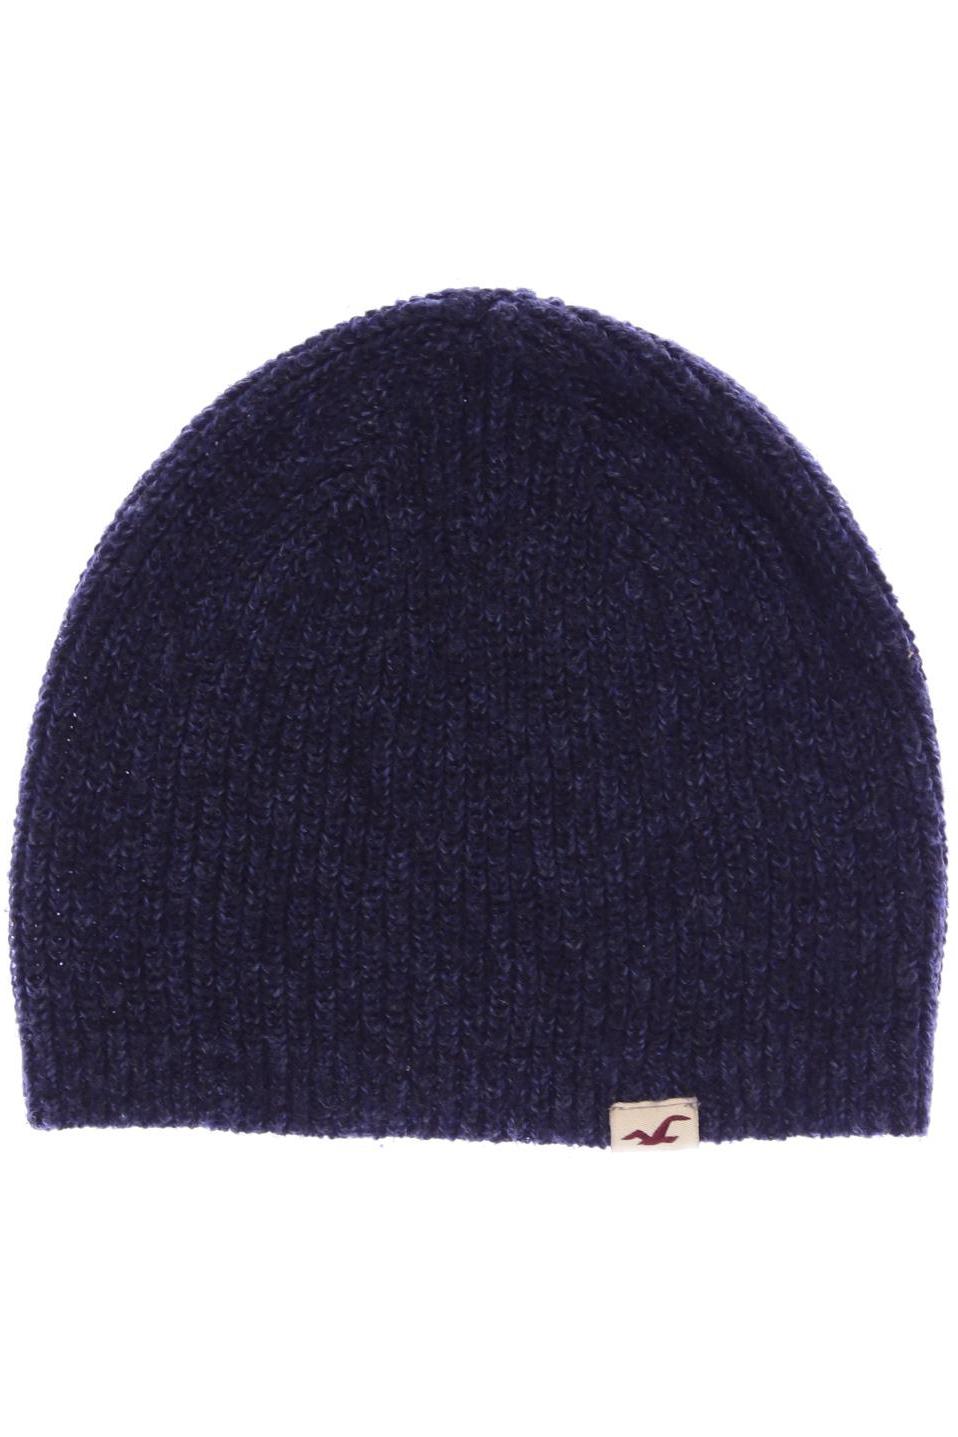 Hollister Damen Hut/Mütze, marineblau von Hollister